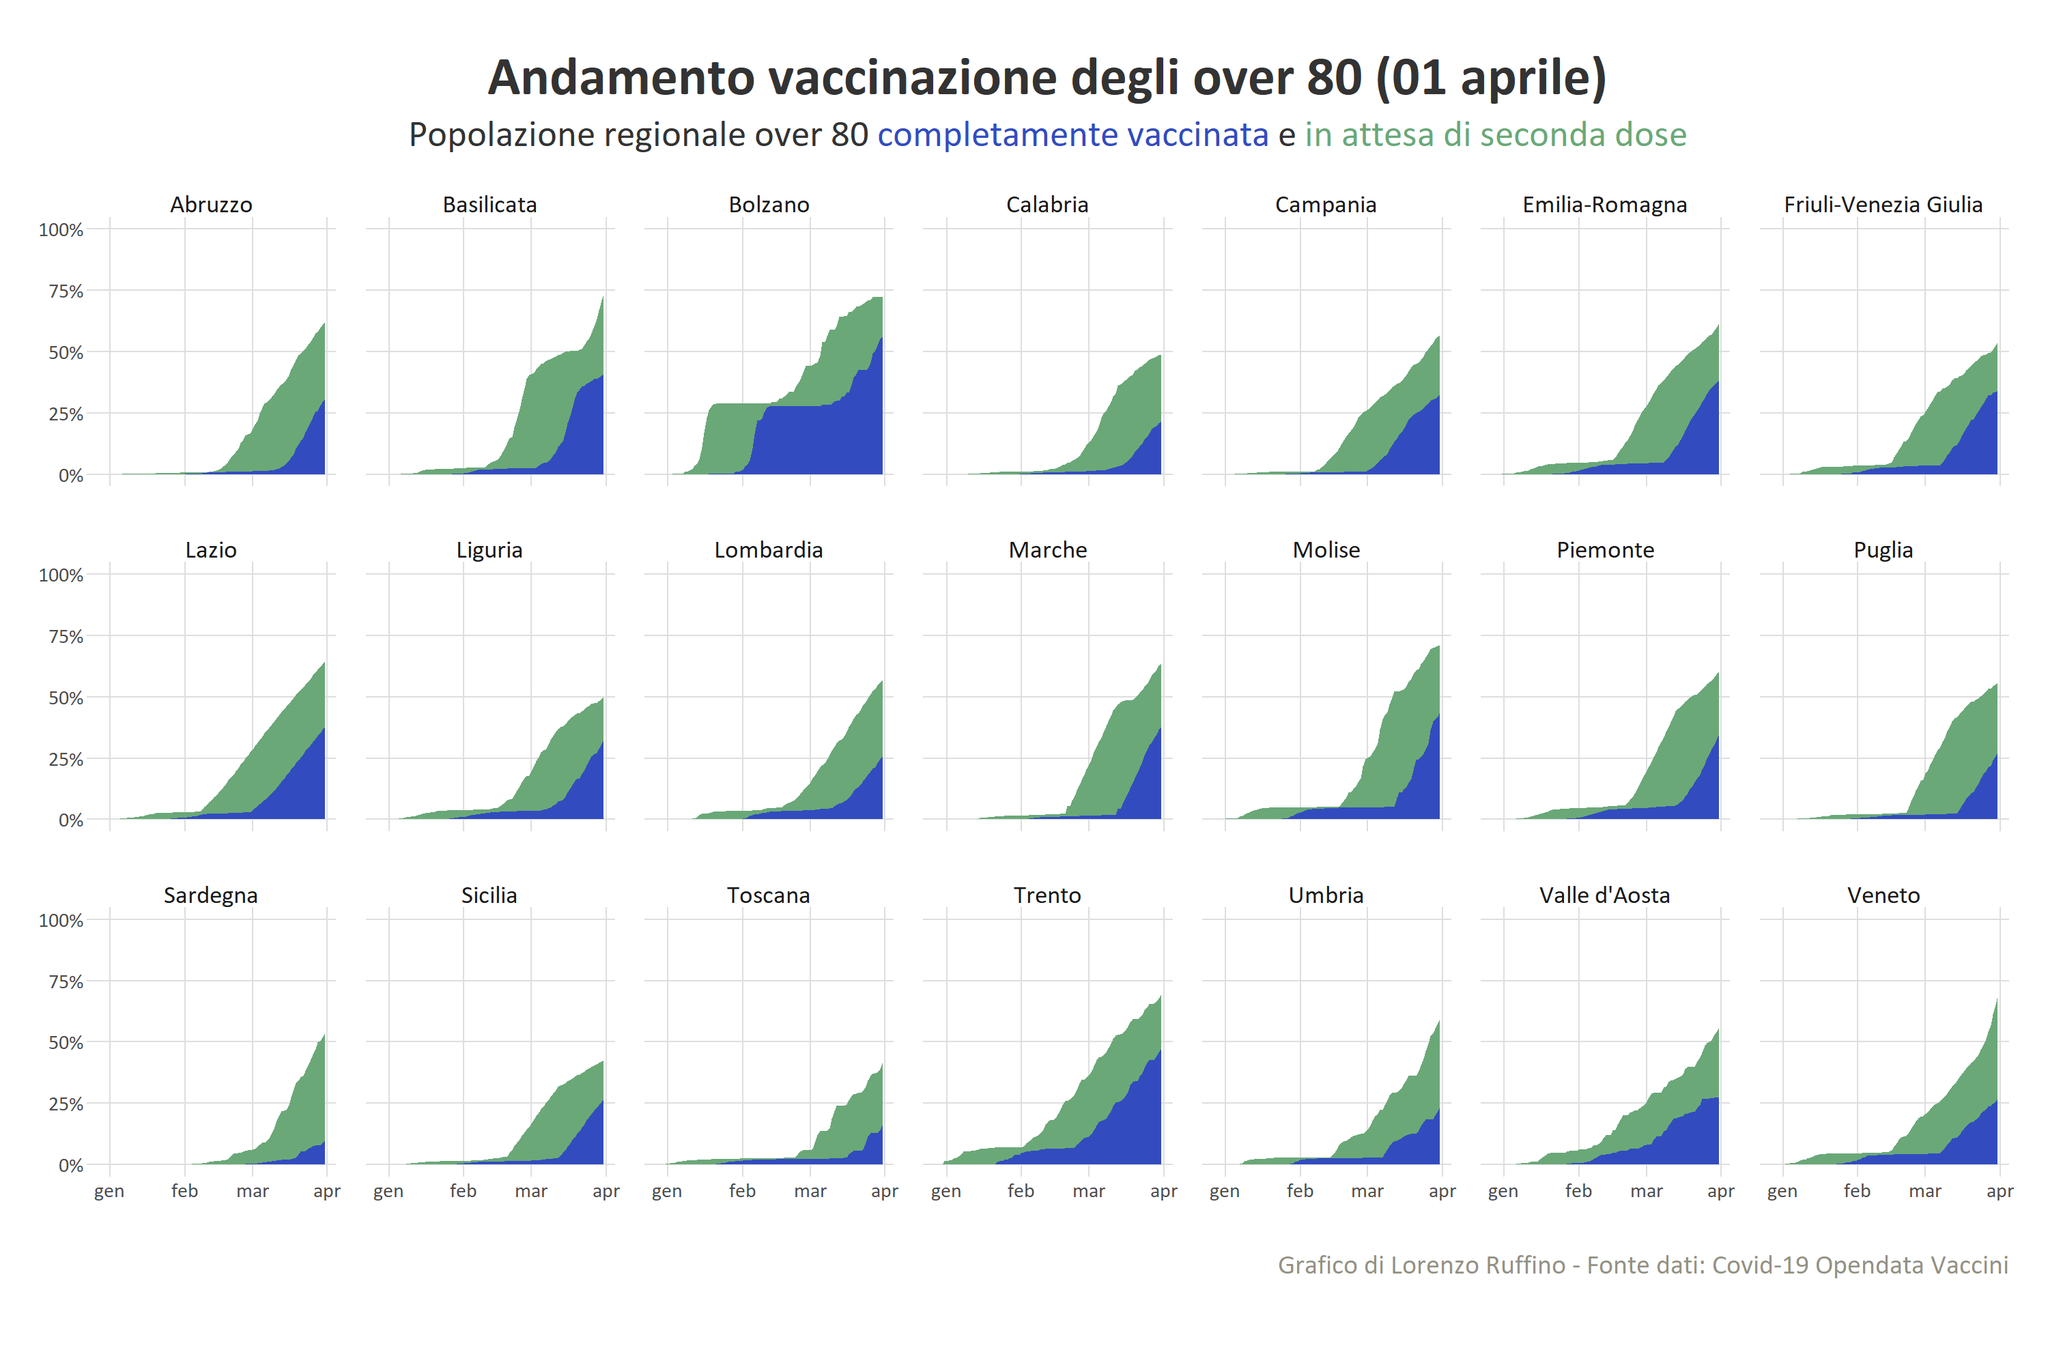 Mugnai (FI): “Over 80 vaccinati sulla popolazione residente in ogni regione italiana, ecco il dato aggiornato. Toscana sempre in fondo!”